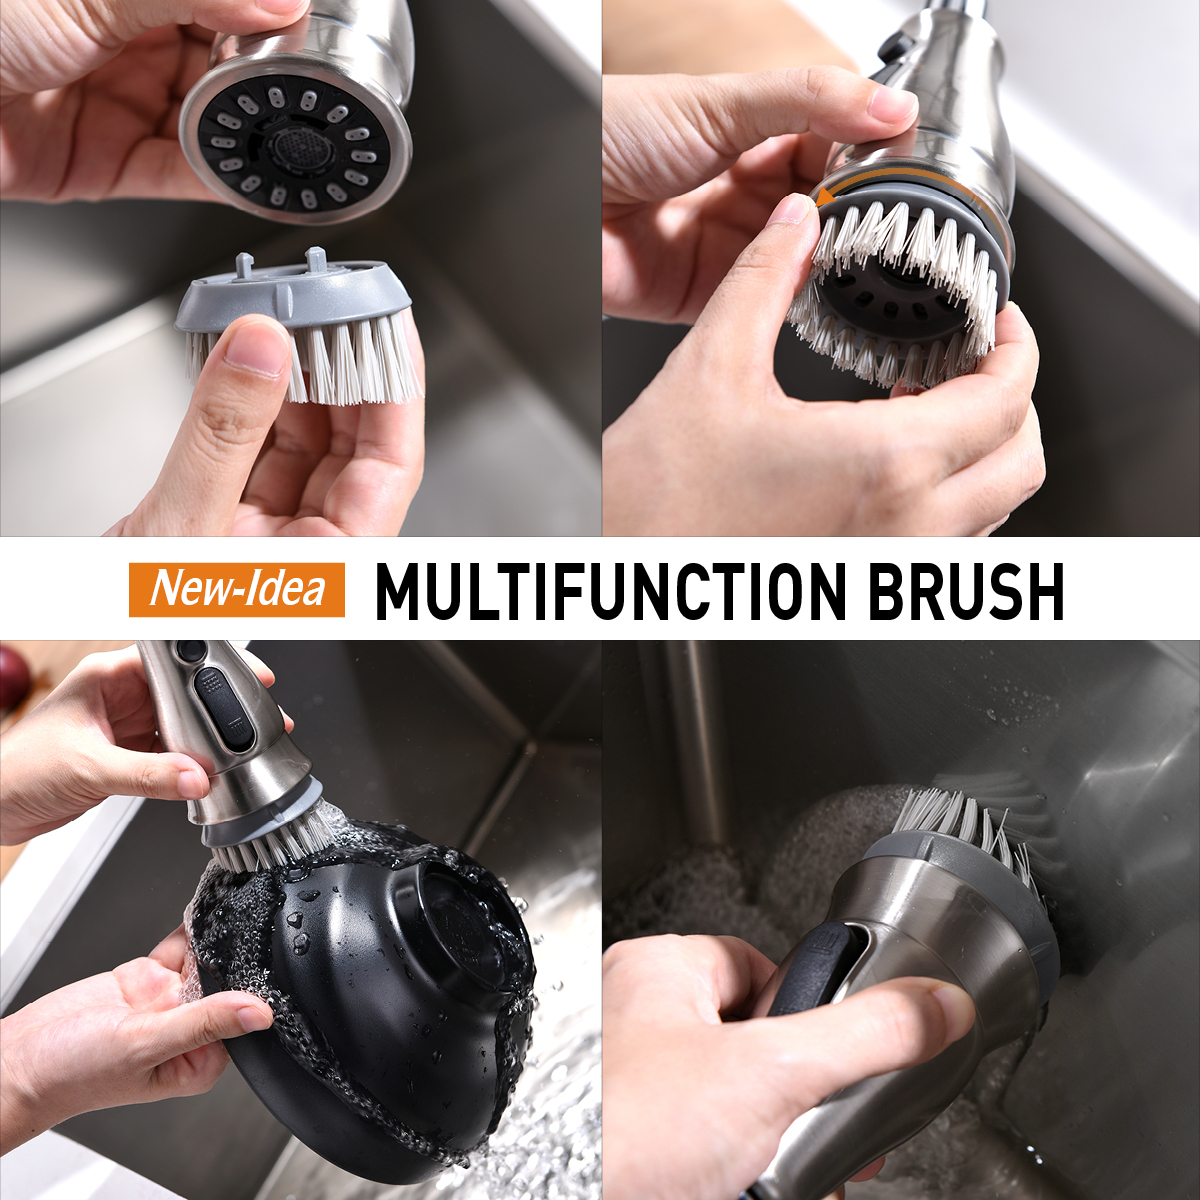 Berührungsloser Wasserhahn Sensor Wasserhahn mit Berührungssensor Touch Küchenarmatur mit herunterziehbarem Sprüher